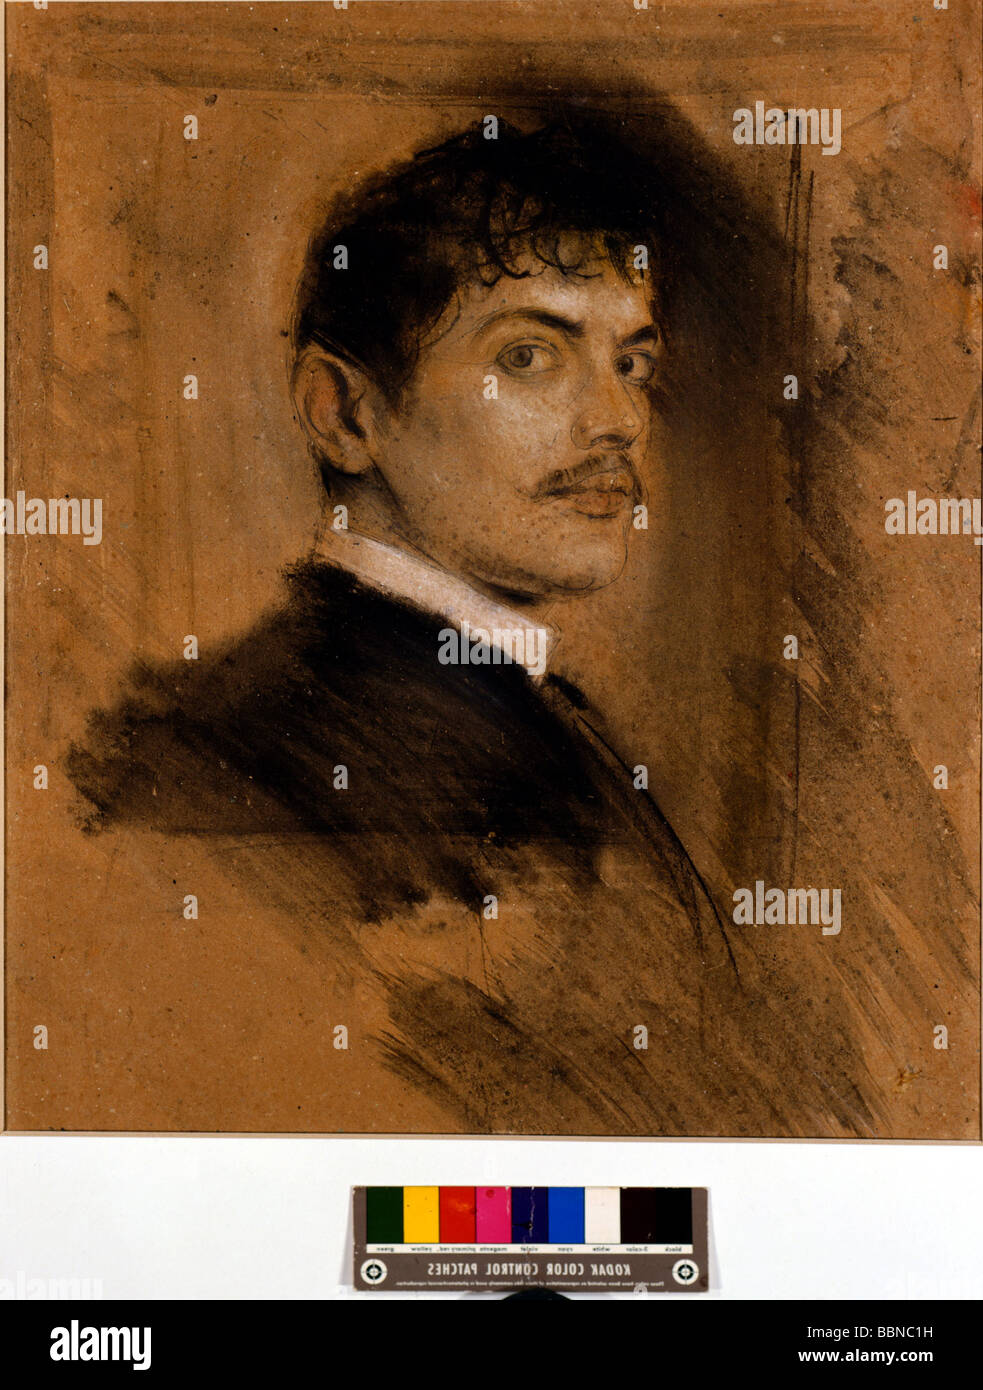 Bloccato, Franz von, 23.2.1863 - 30.8.1928, pittore tedesco, scultore, ritratto, disegno a carbone, 57 x 48 cm, 1892, Museo Villa Stuck, Foto Stock